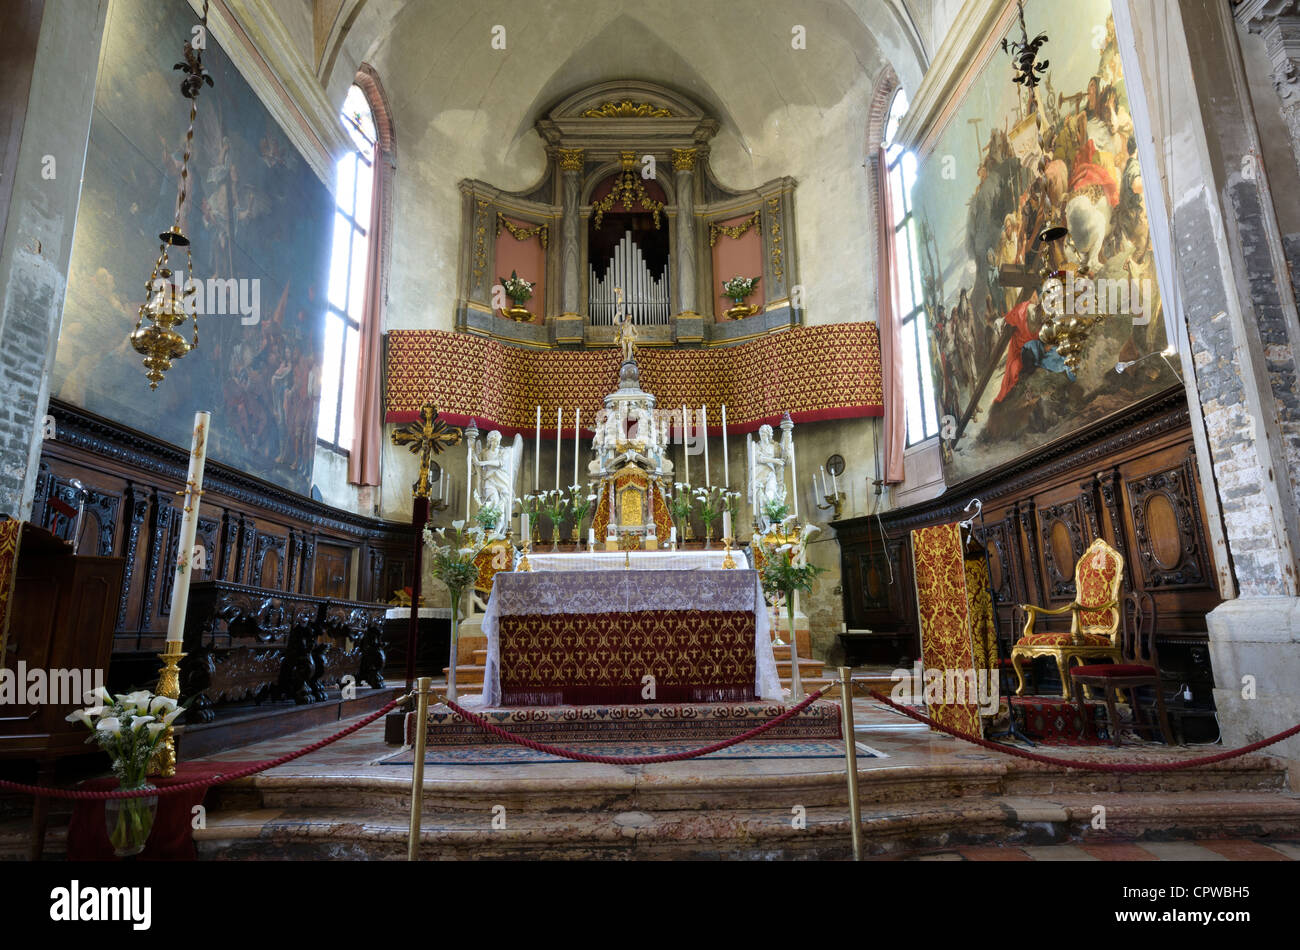 Church of Sant'alvise altar - sestiere Cannareggio, Venice - Italy Stock Photo